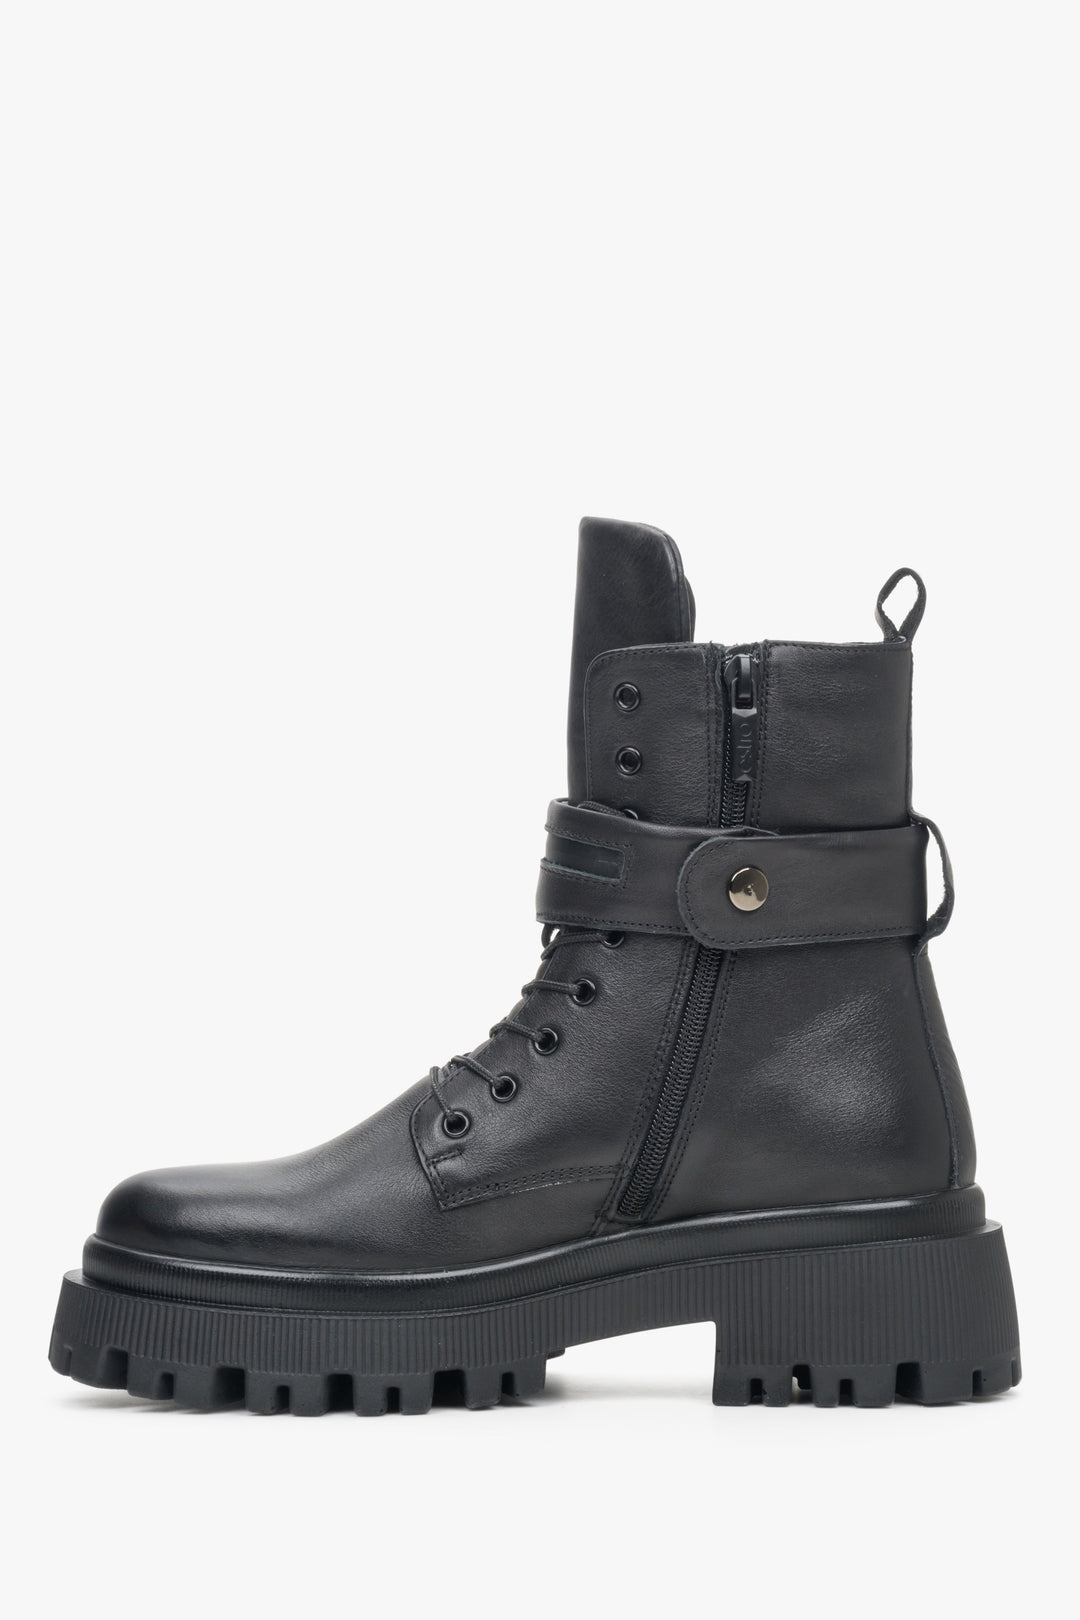 Wysokie, czarne botki damskie zimowe na platformie marki Estro - zbliżenie na profil buta.